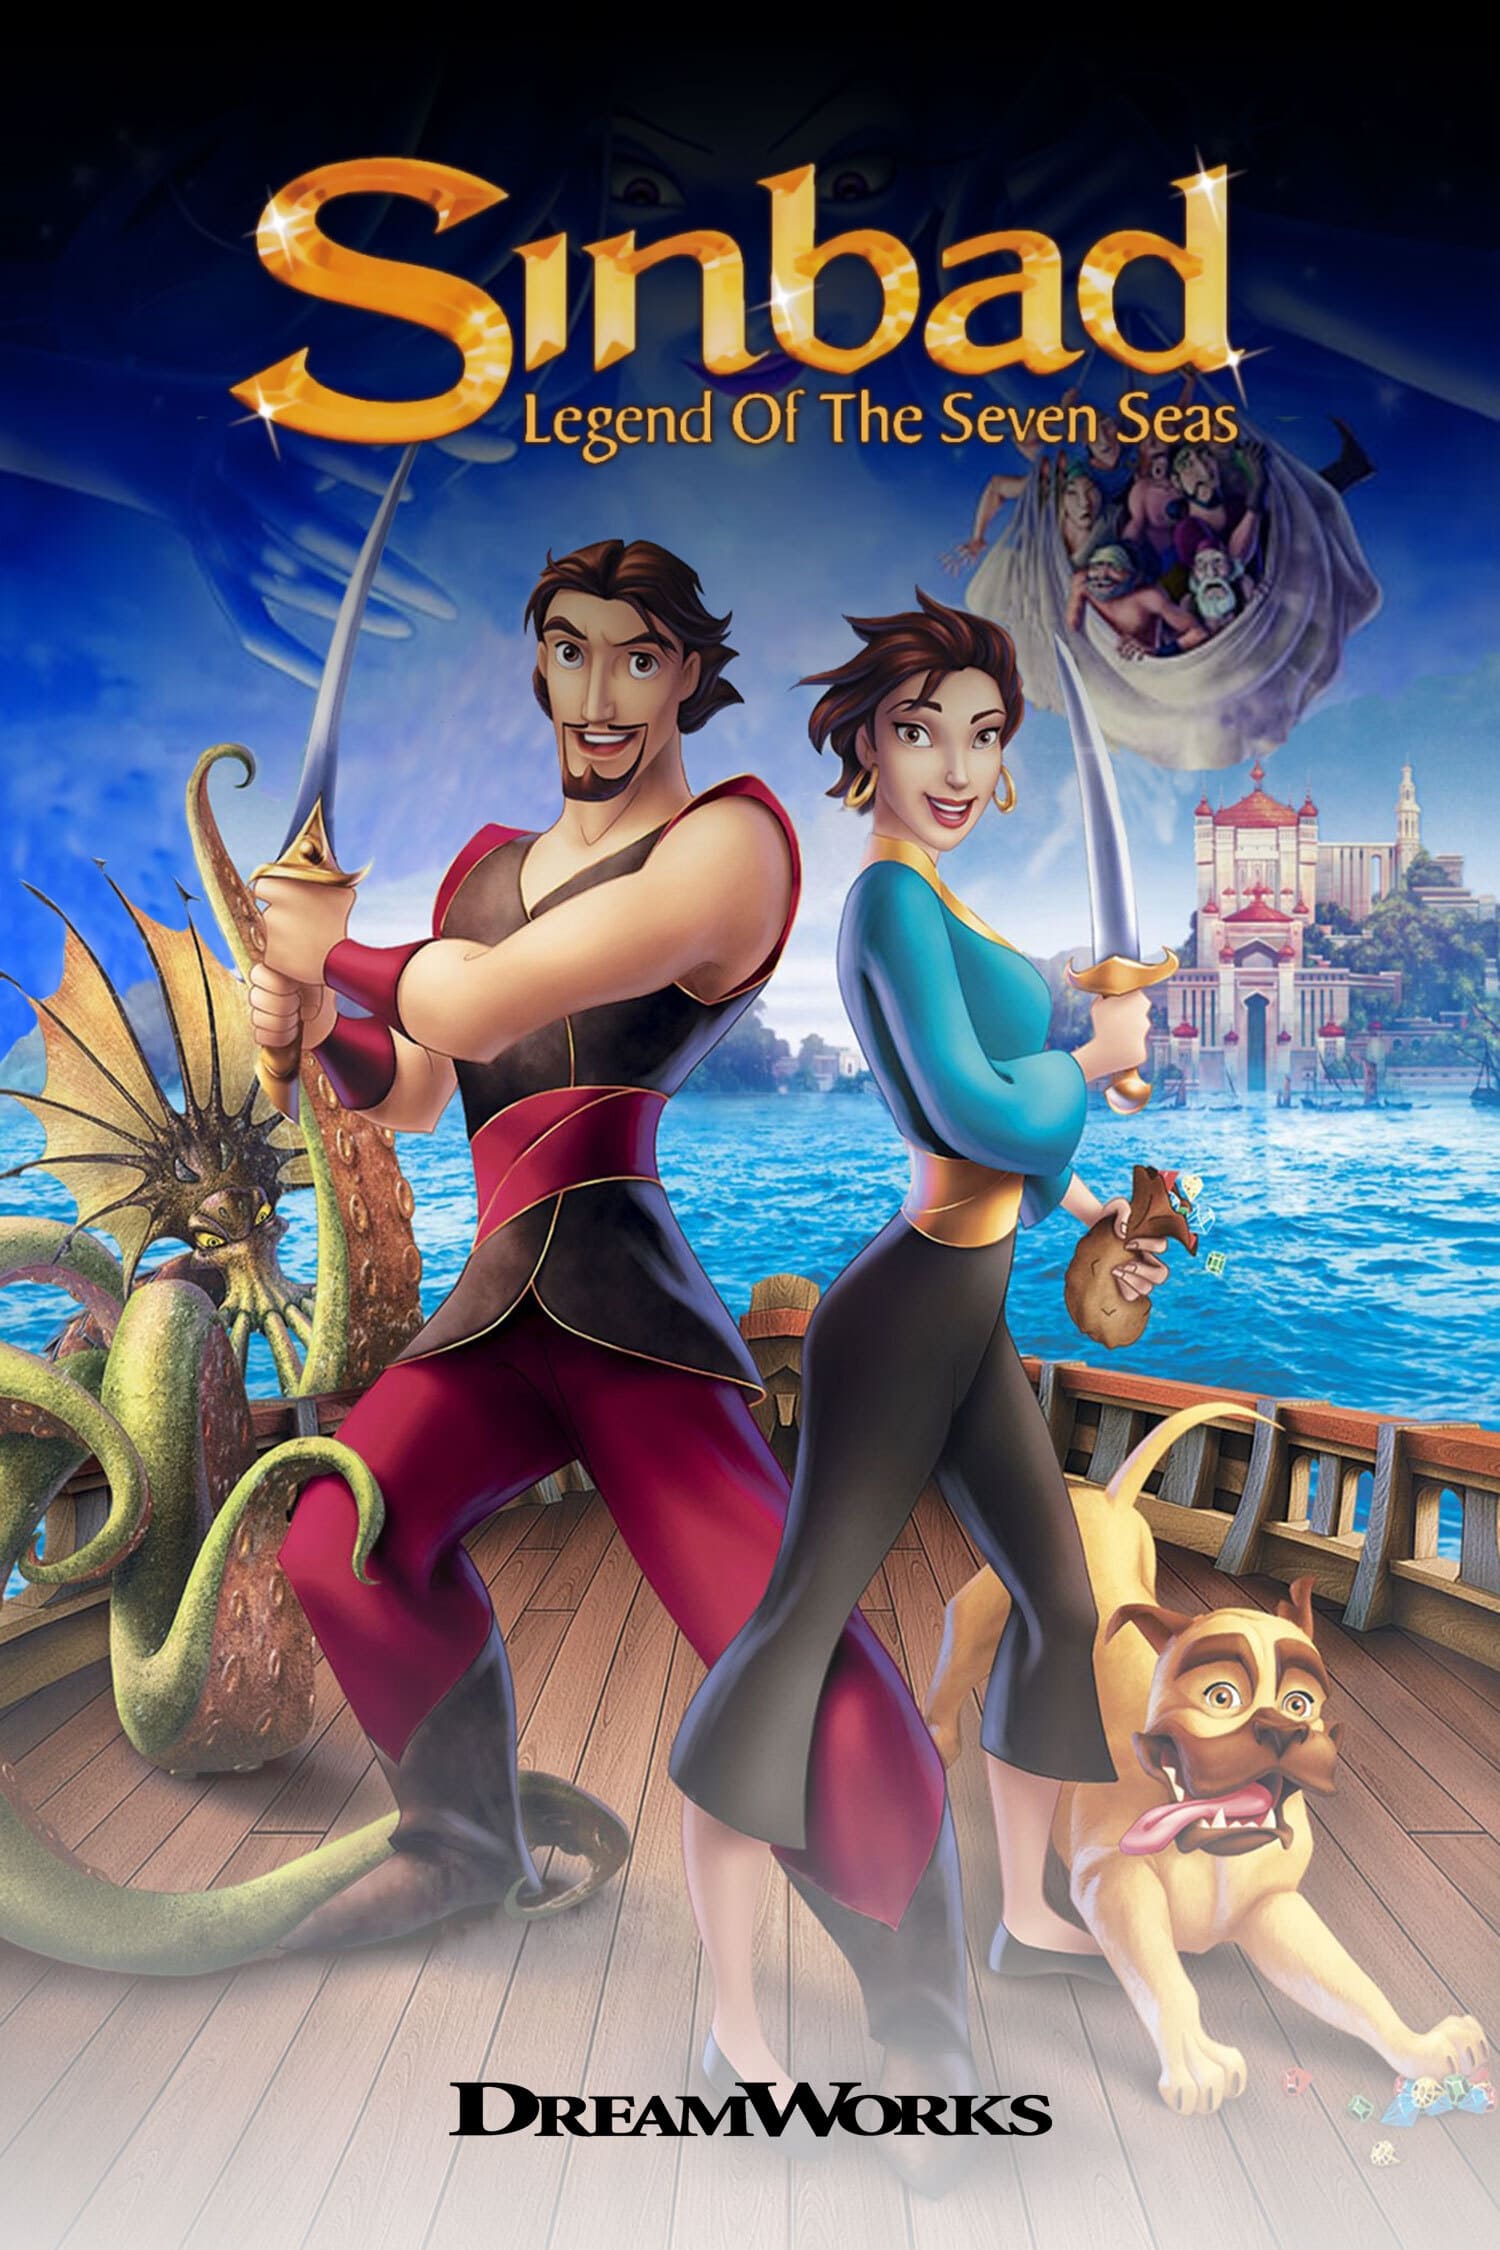 Sinbad: Huyền Thoại Bảy Đại Dương – Sinbad: Legend of the Seven Seas (2003) Full HD Vietsub